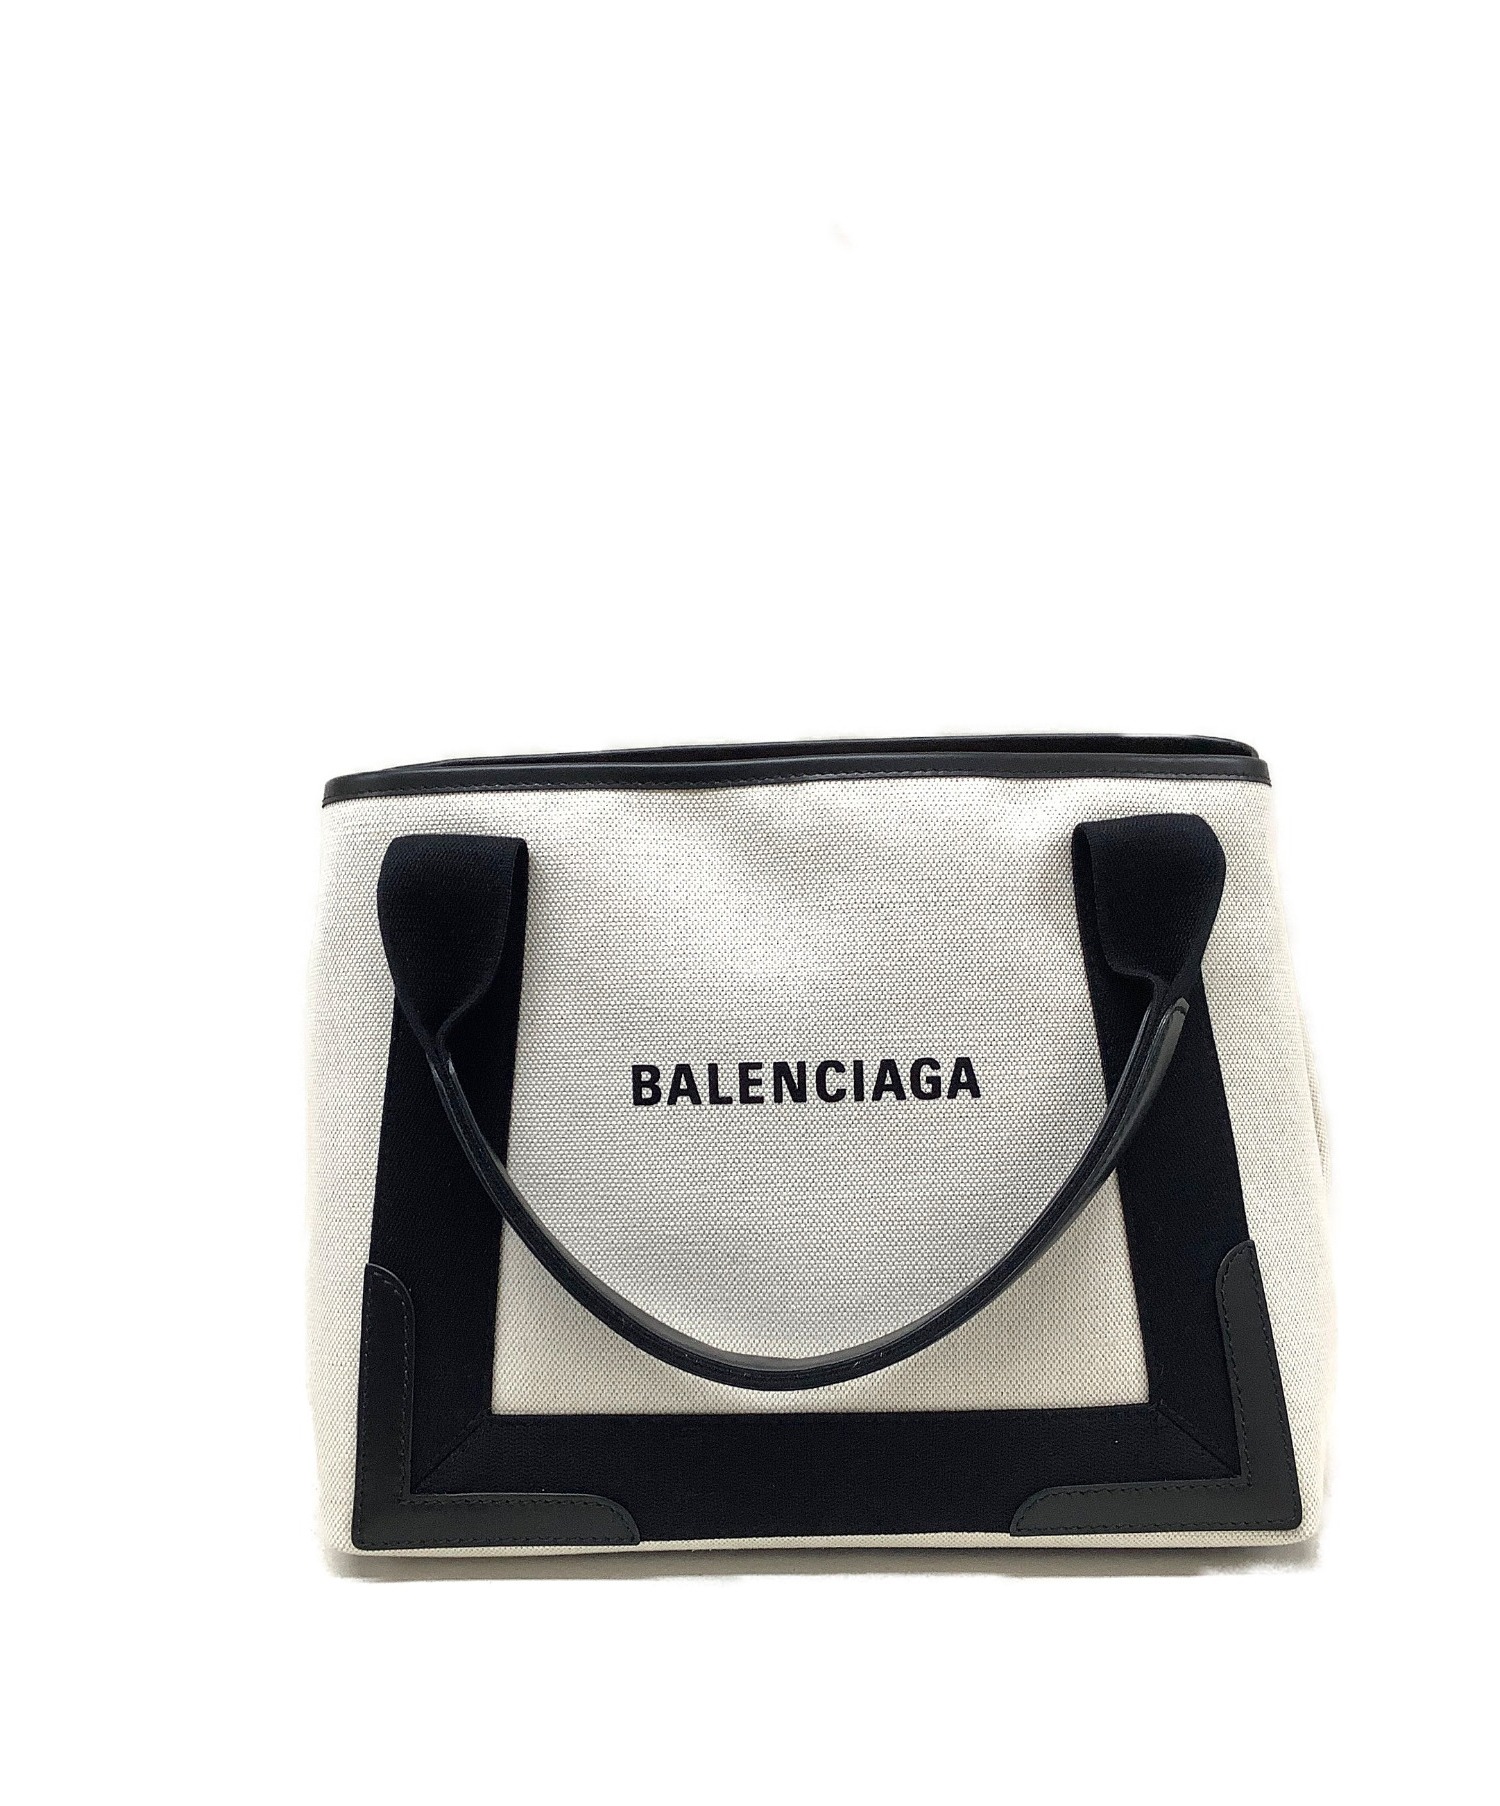 【中古・古着通販】BALENCIAGA (バレンシアガ) カバス トートバッグ ホワイト×ブラック カバス キャンバス